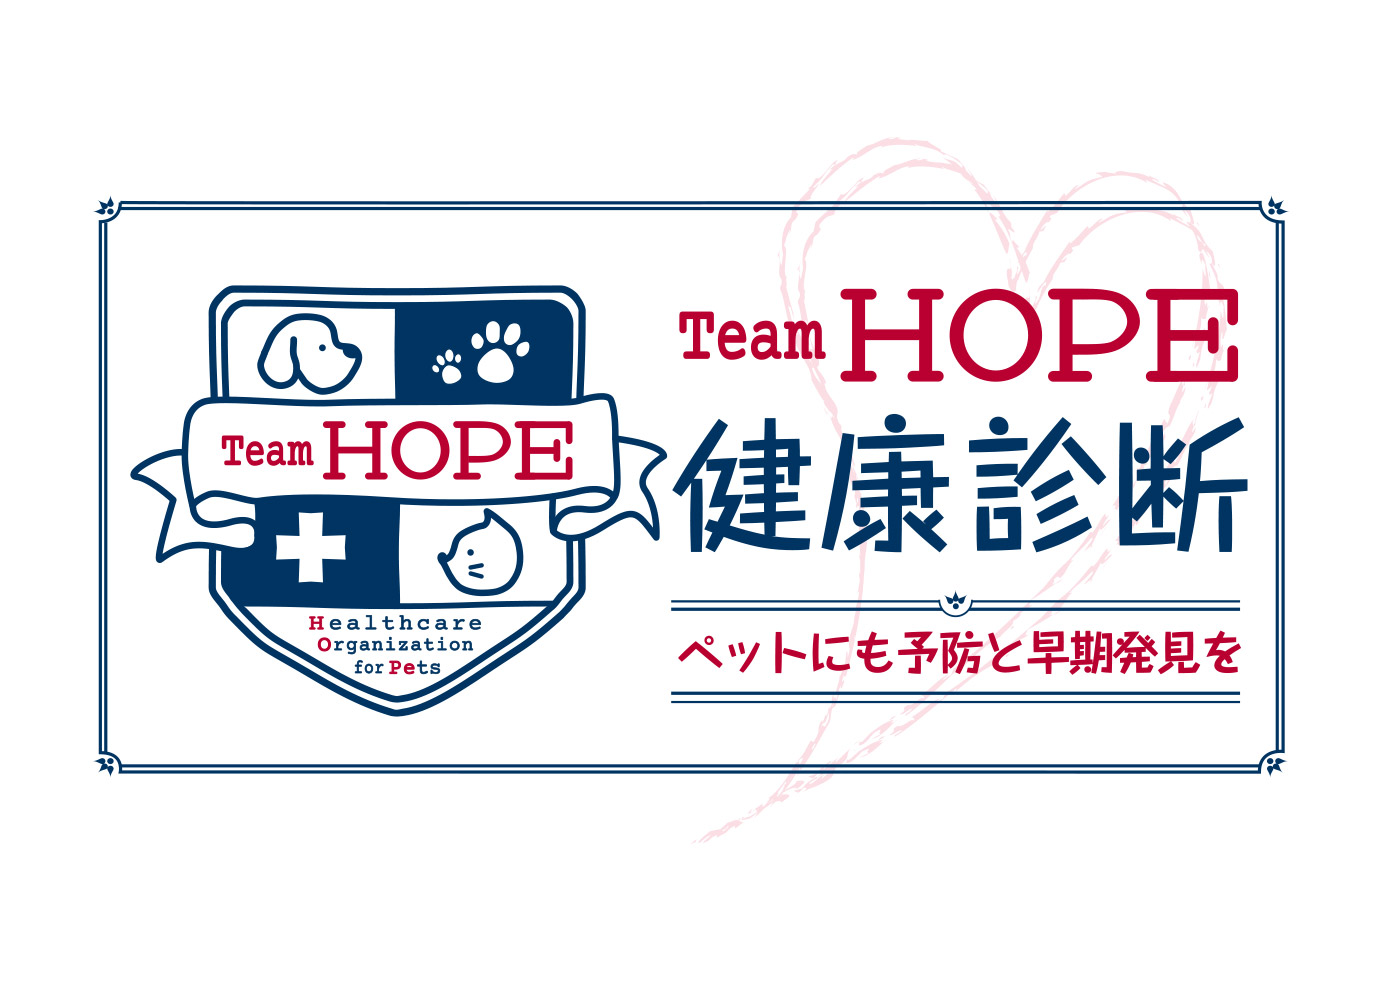 「Team HOPE健康診断」シートについてのお知らせ